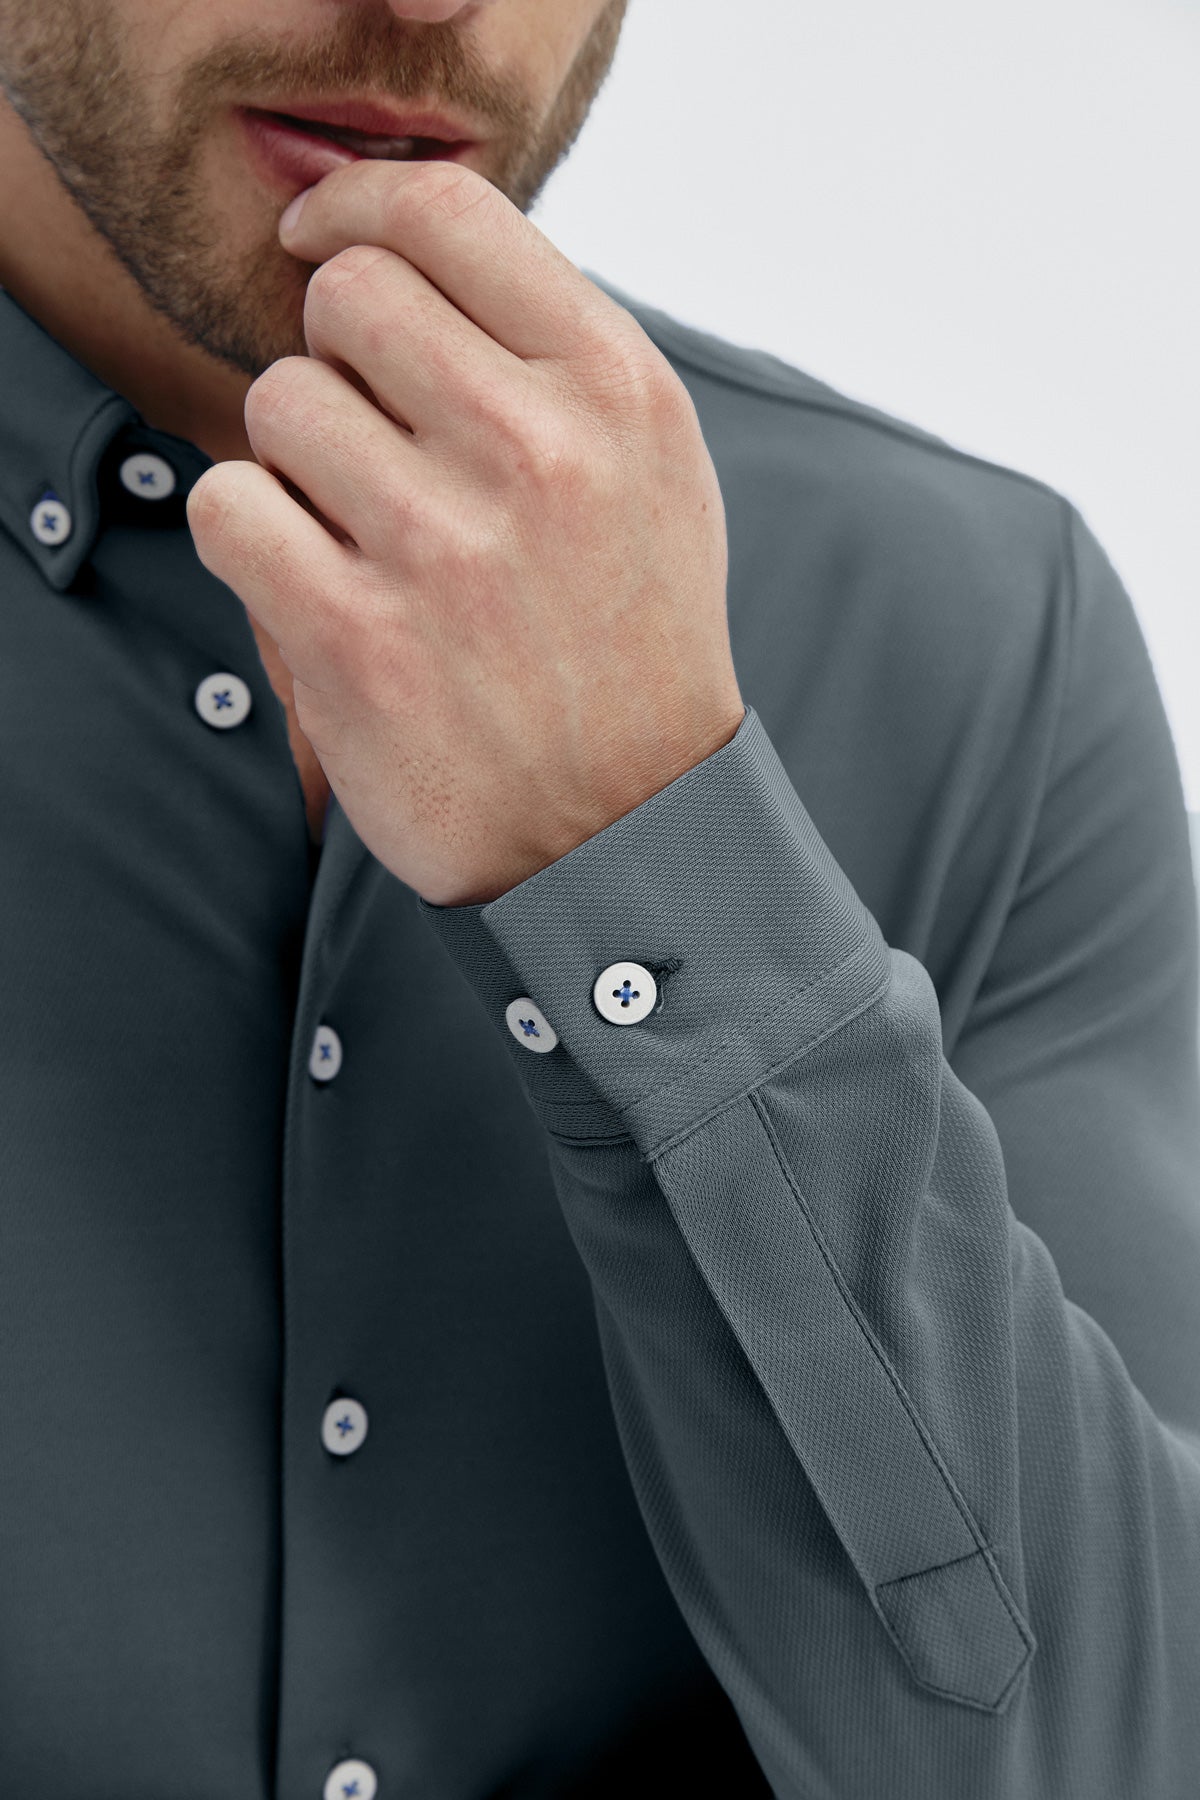 Camisa casual astro para hombre sin arrugas ni manchas. Manga larga, antiarrugas y antimanchas. Foto detalle